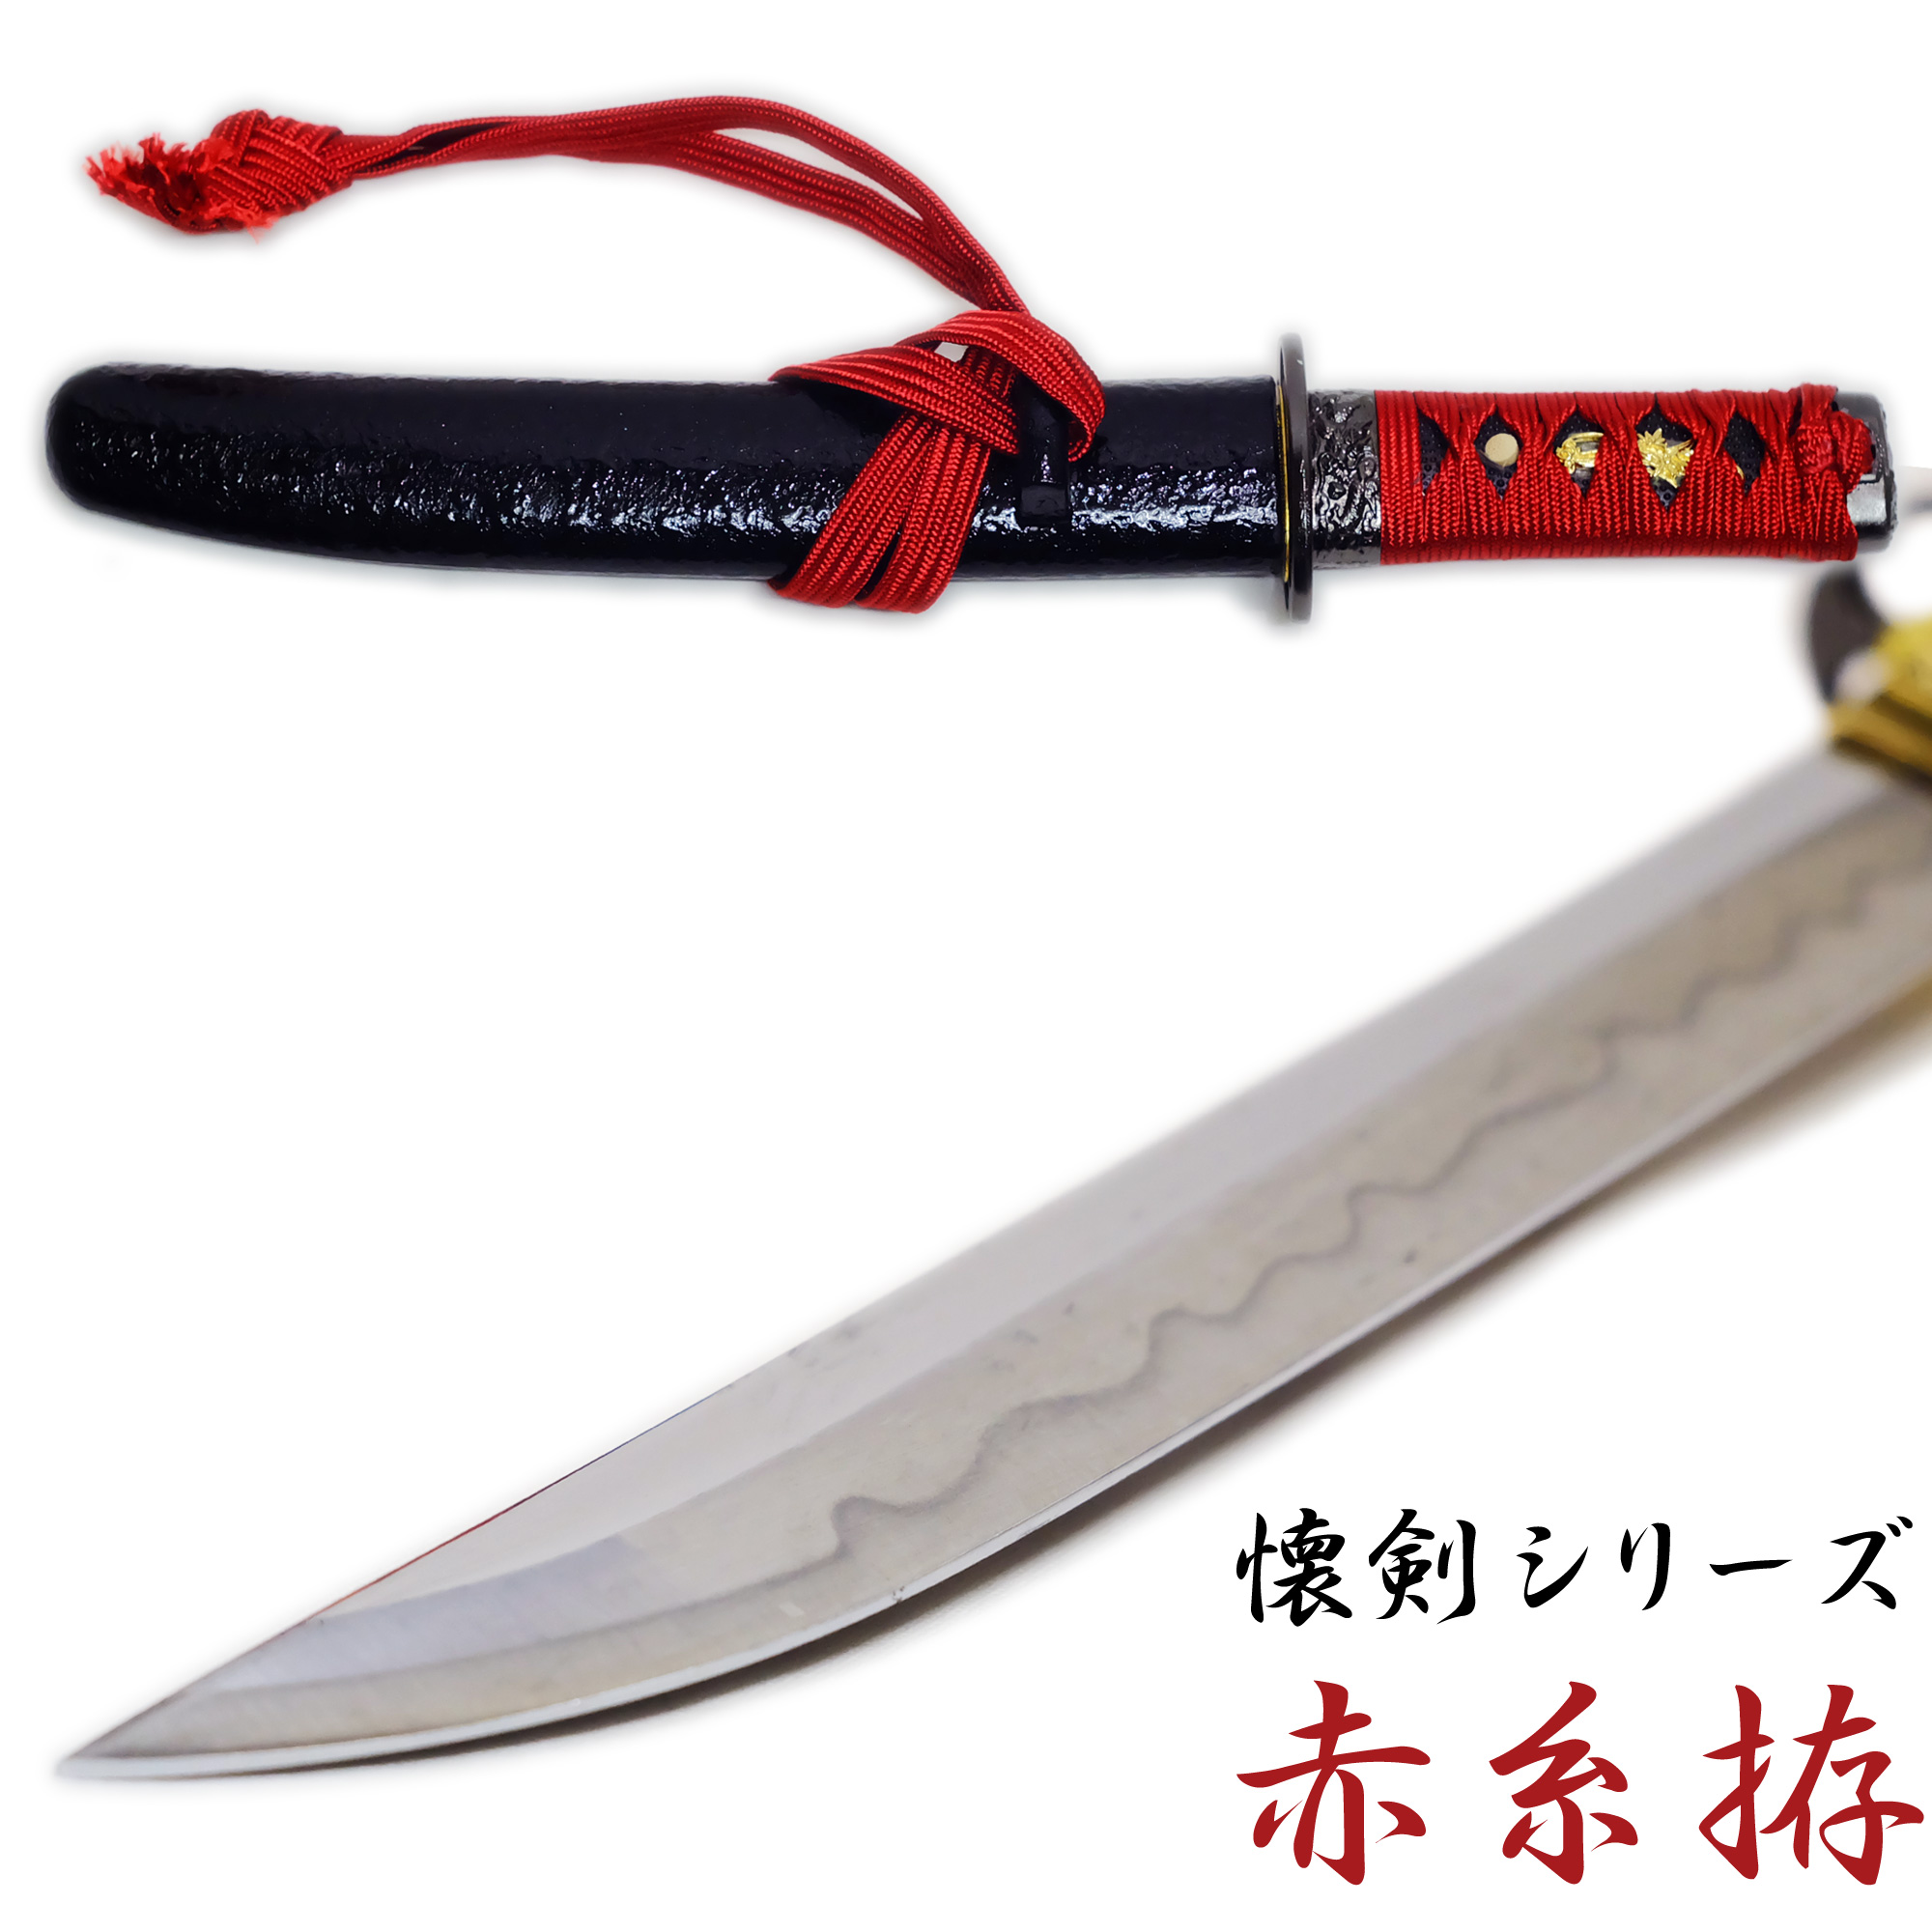 匠刀房 懐剣 赤糸拵 NEU-101RD – 懐剣シリーズ 模造刀 | 日光 匠家